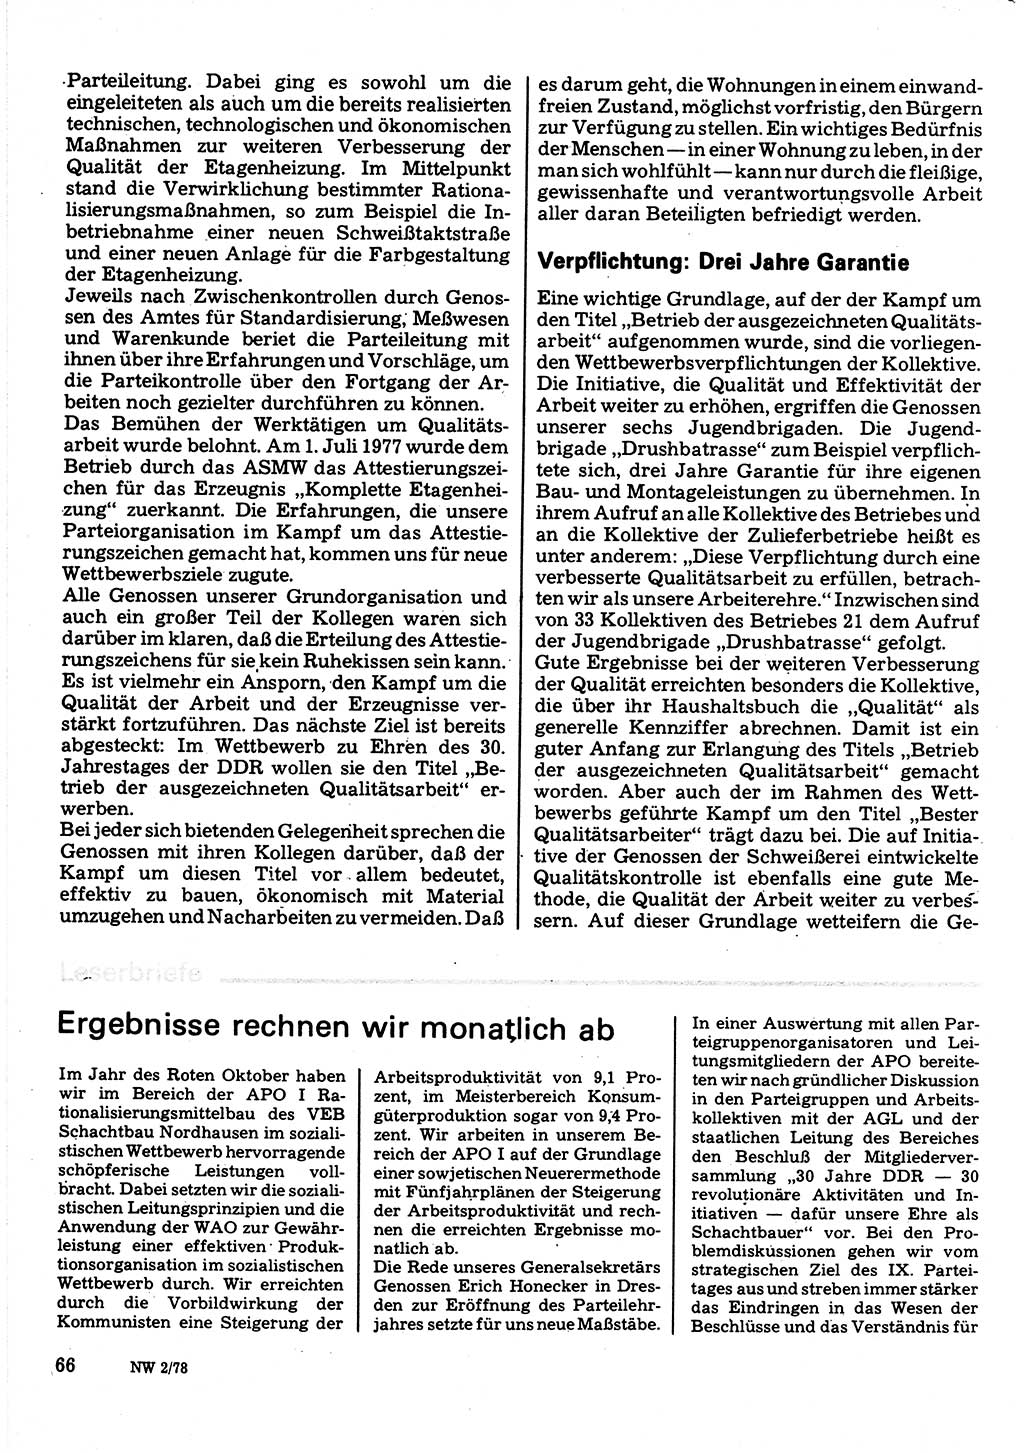 Neuer Weg (NW), Organ des Zentralkomitees (ZK) der SED (Sozialistische Einheitspartei Deutschlands) für Fragen des Parteilebens, 33. Jahrgang [Deutsche Demokratische Republik (DDR)] 1978, Seite 66 (NW ZK SED DDR 1978, S. 66)